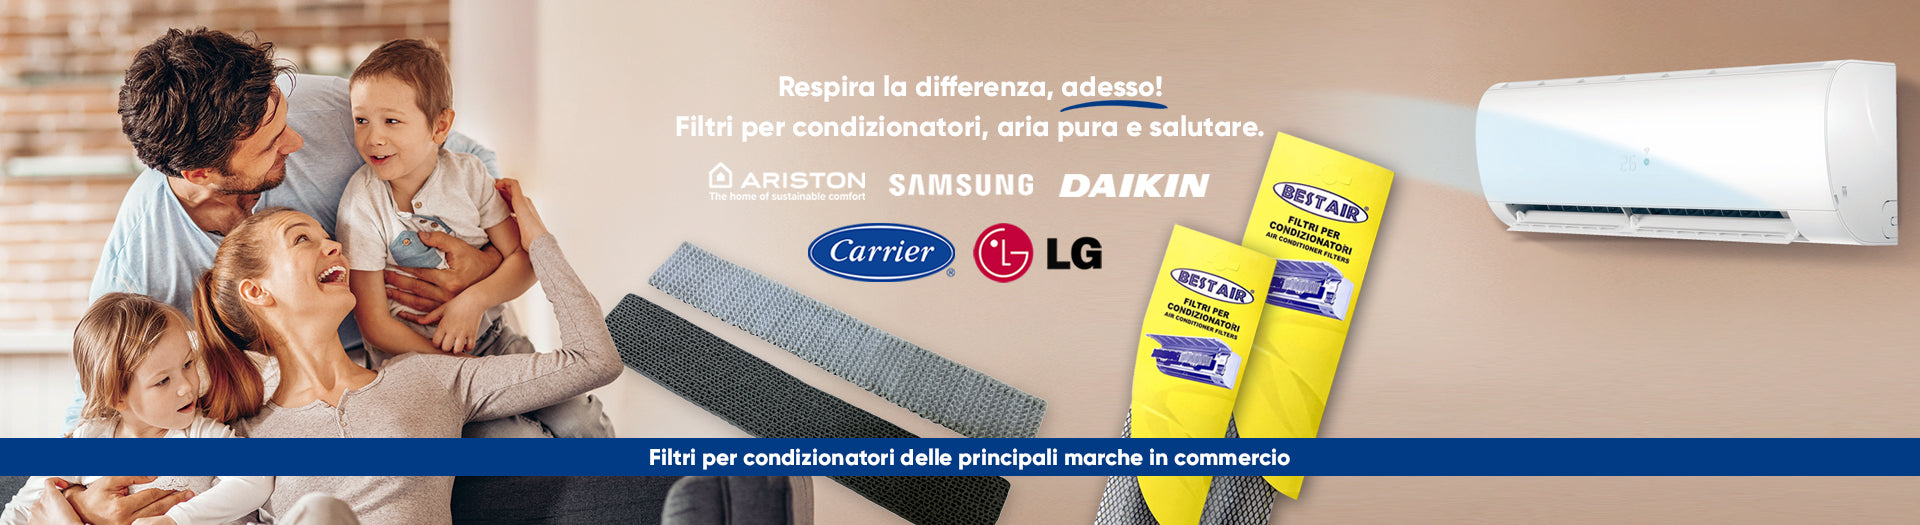 Banner promozionale di Aria Sana eRicambi mostrante una vasta gamma di filtri e accessori per condizionatori, ideali per migliorare la qualità dell'aria interna